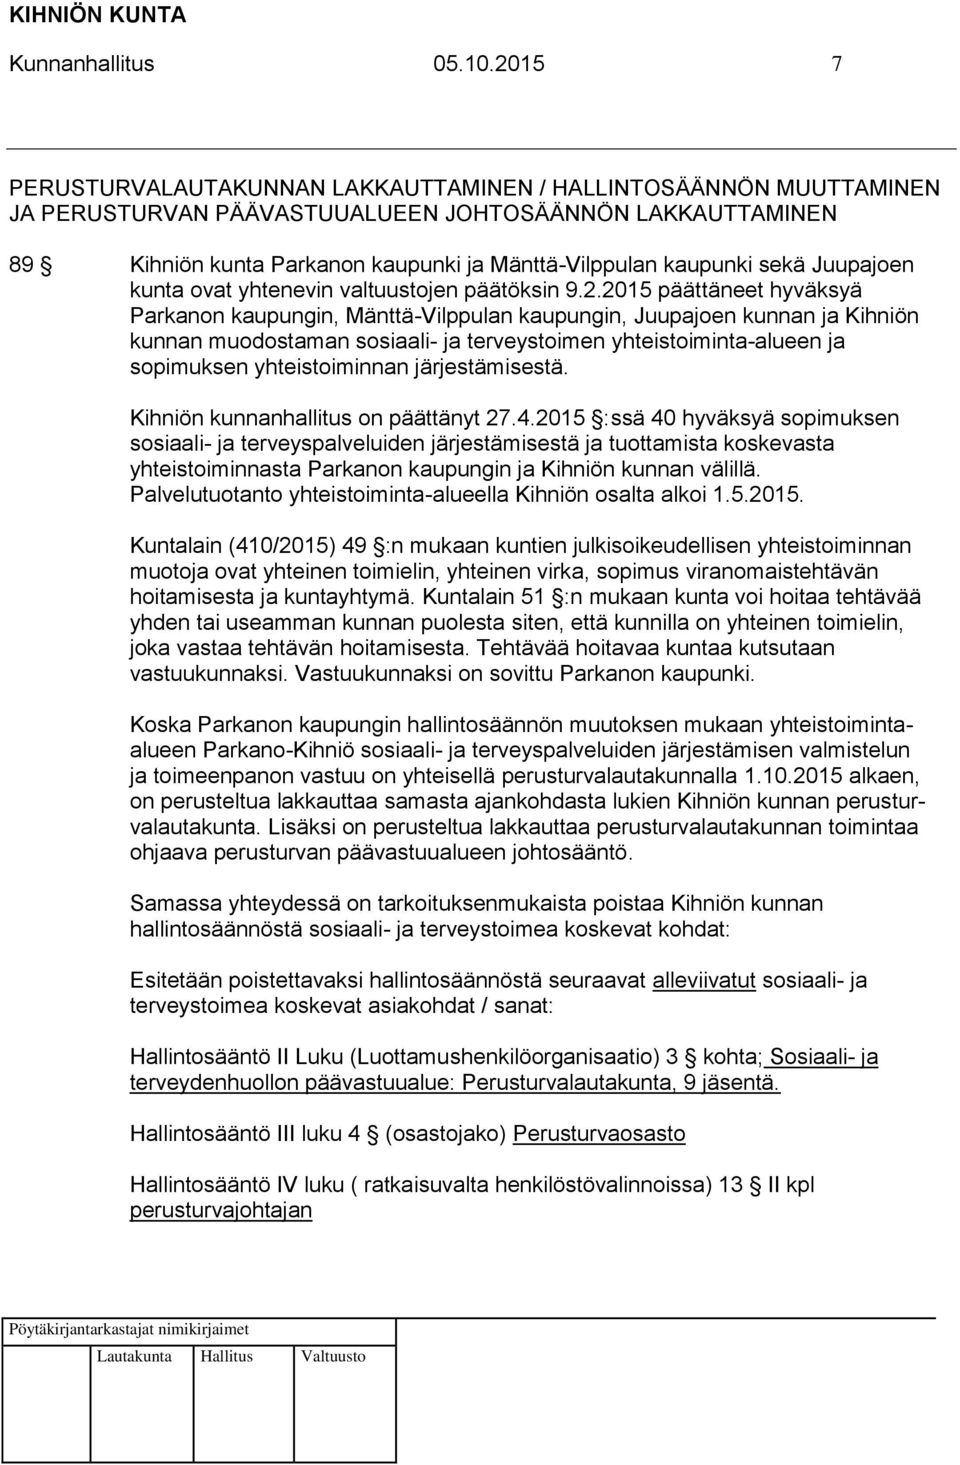 sekä Juupajoen kunta ovat yhtenevin valtuustojen päätöksin 9.2.